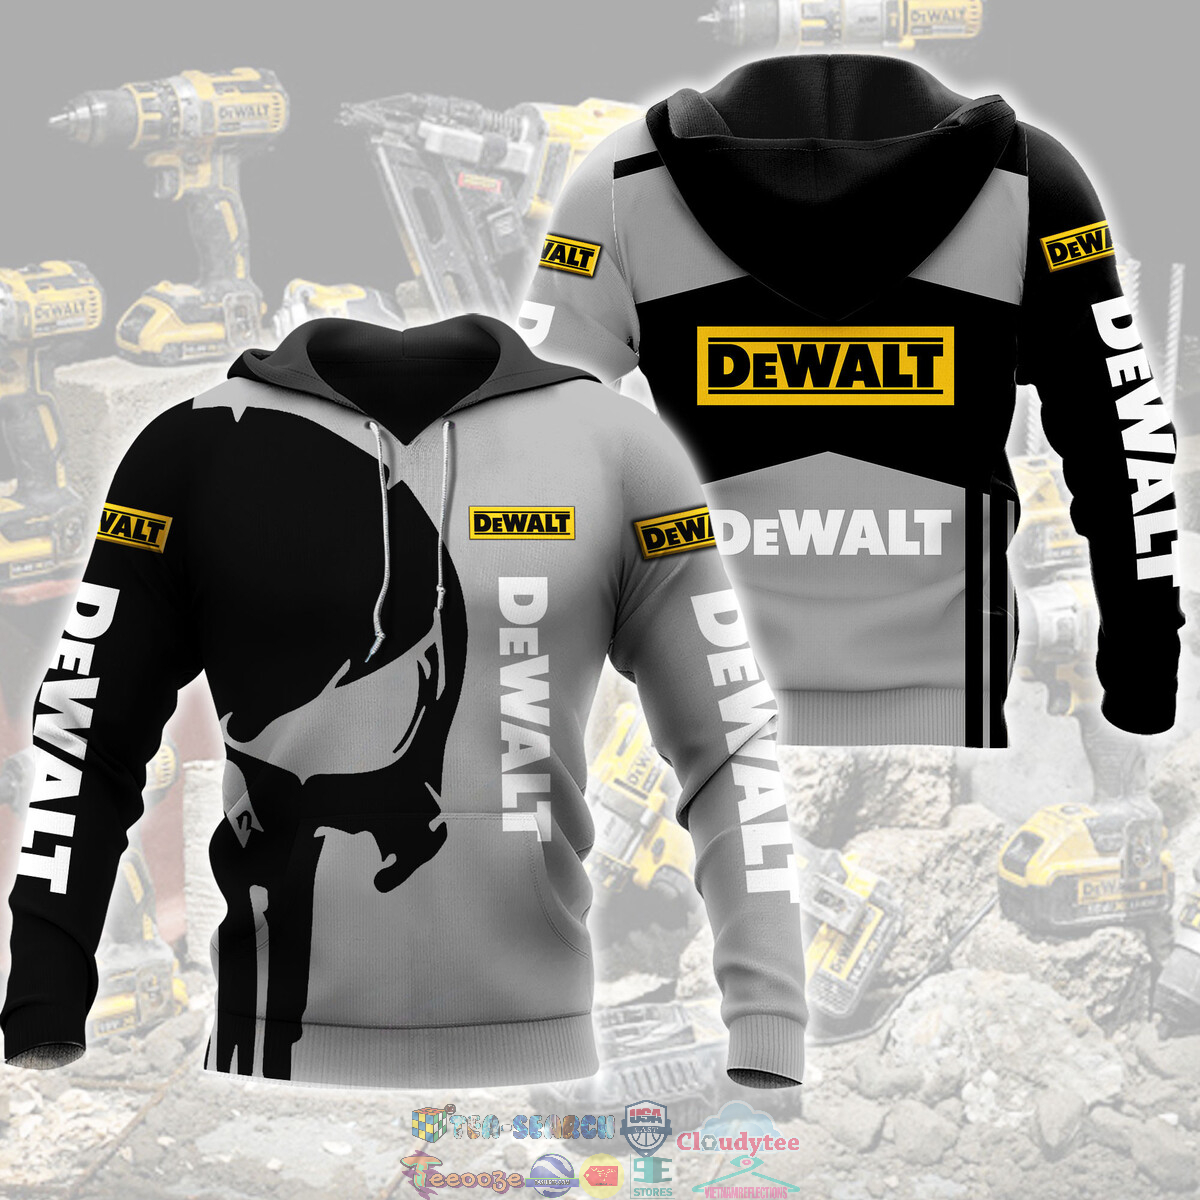 Dewalt Skull ver 3 3D hoodie and t-shirt